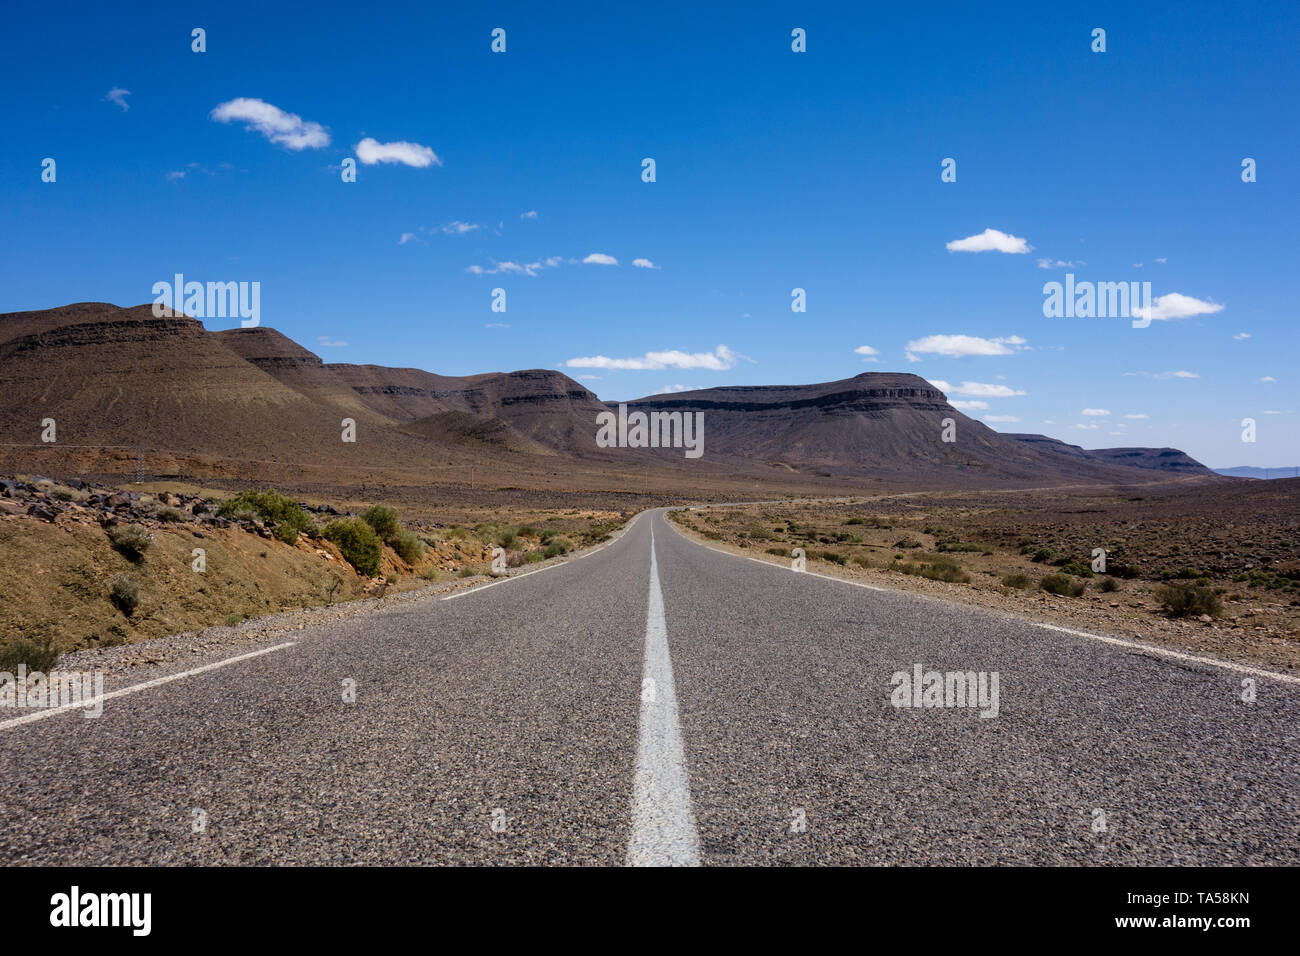 Marokkanischen Autobahn mit einem felsigen Wüstenlandschaft auf einer Straße - Reise von Marrakesch, Fes, Marokko Stockfoto